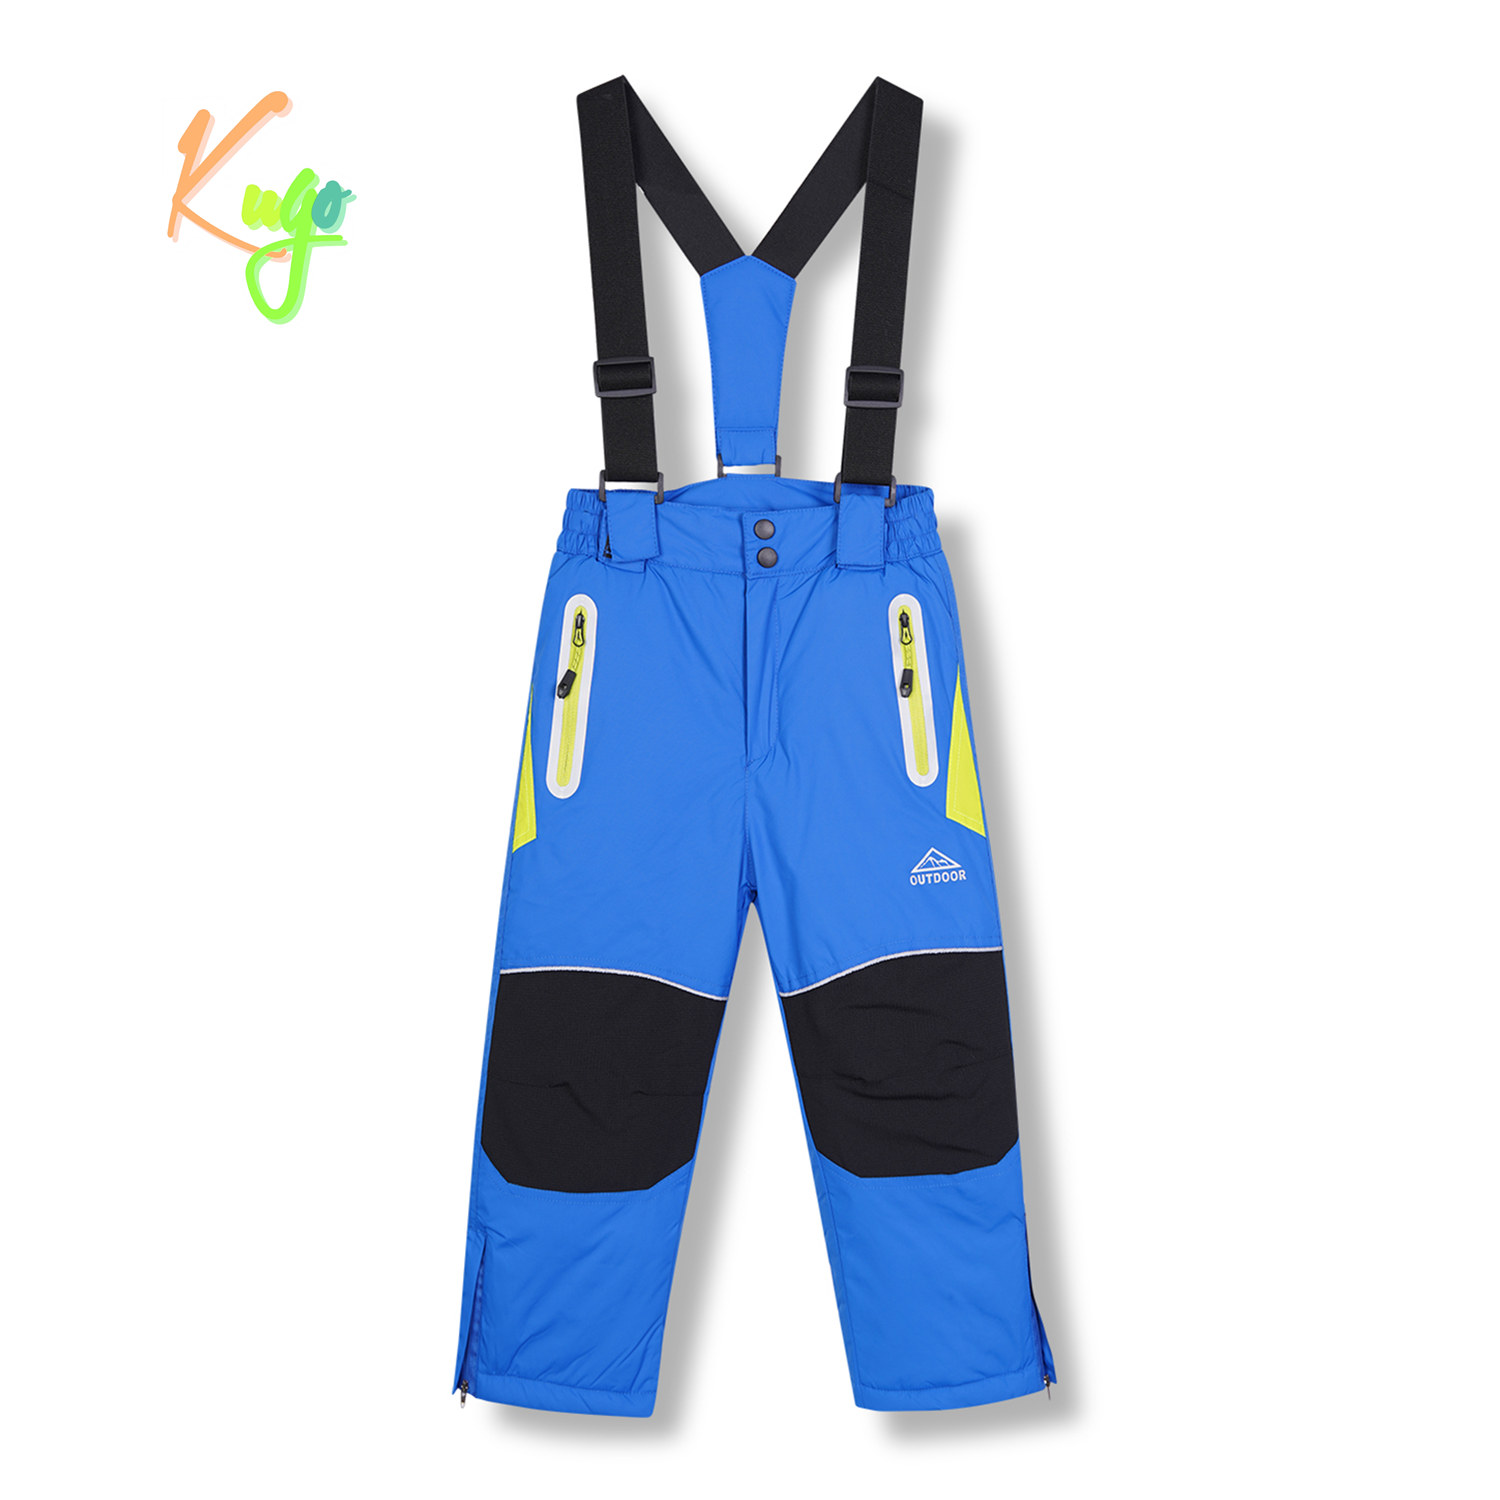 Chlapecké lyžařské kalhoty - KUGO DK8230, modrá Barva: Modrá, Velikost: 104